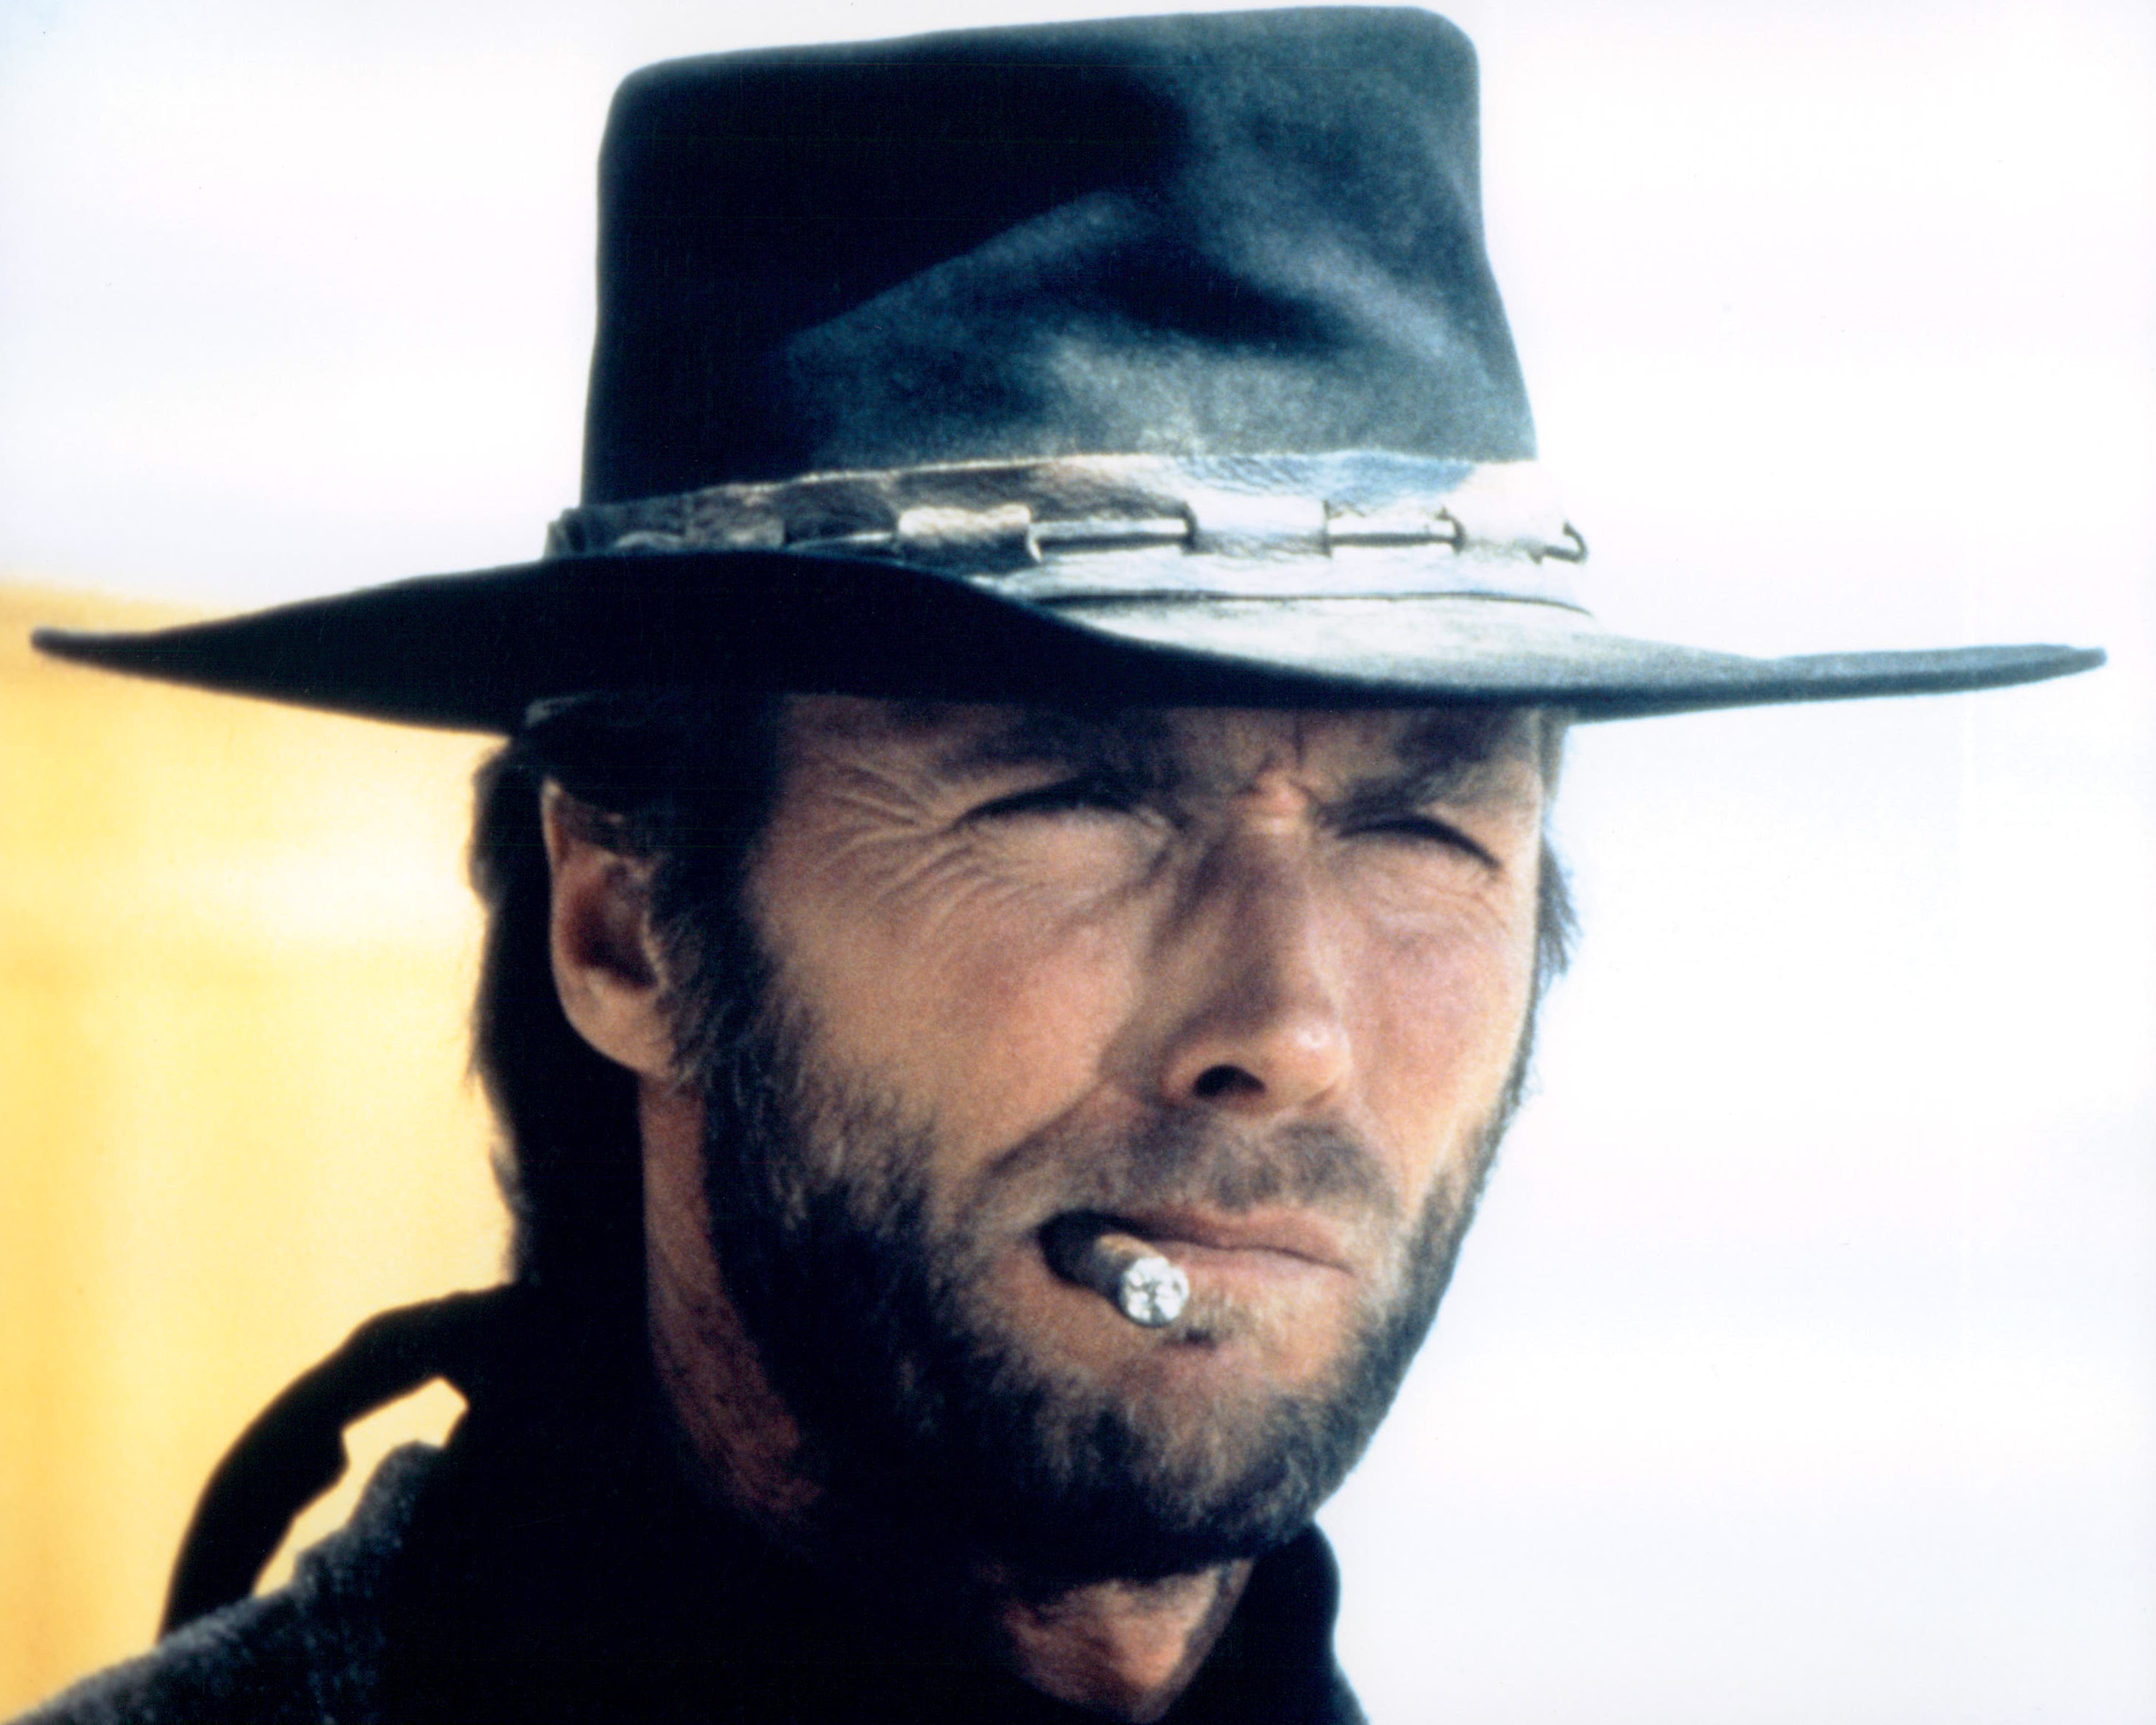 Clint Eastwood in High Plains Drifter (1973)